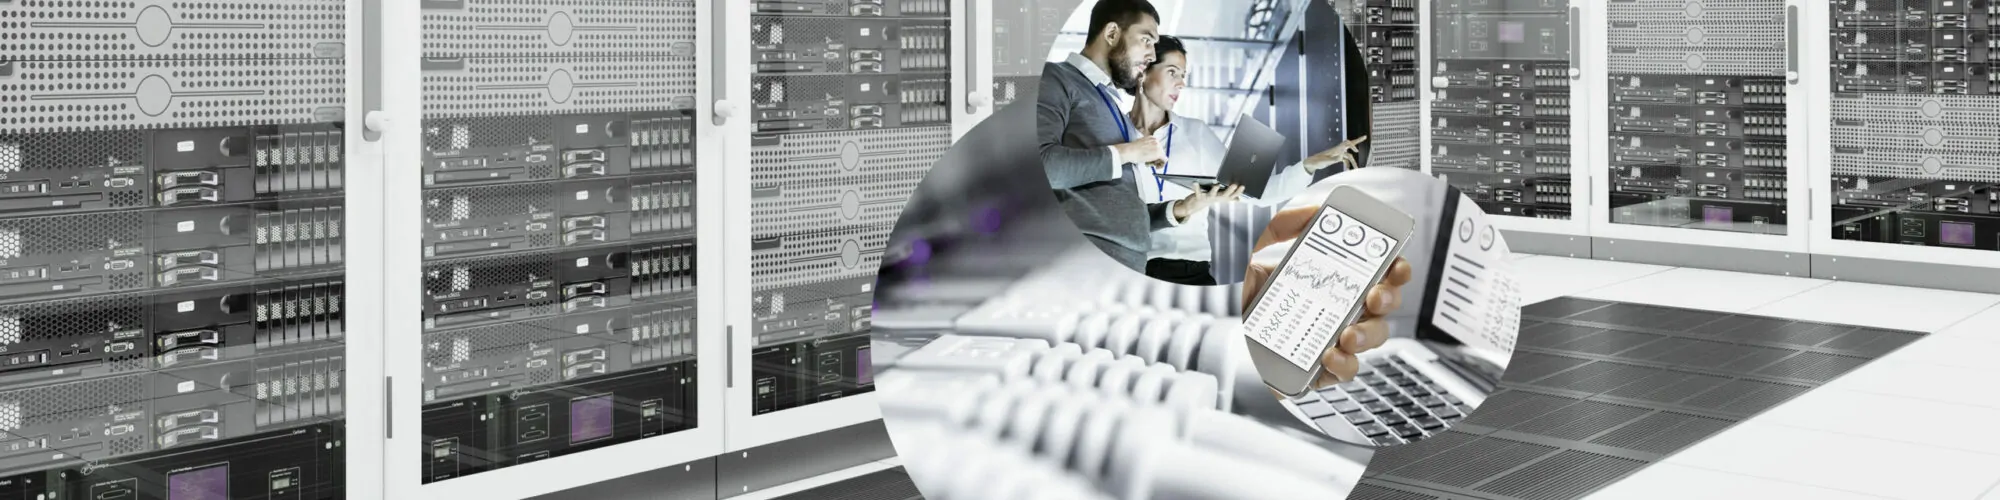 Bild eines Rechenzentrums, strukturierter Verkabelung, ein Laptop und ein Handy sowie zwei Personen, die mit einem Laptop in einem Rechenzentrum stehen | Business Analytics Beratung